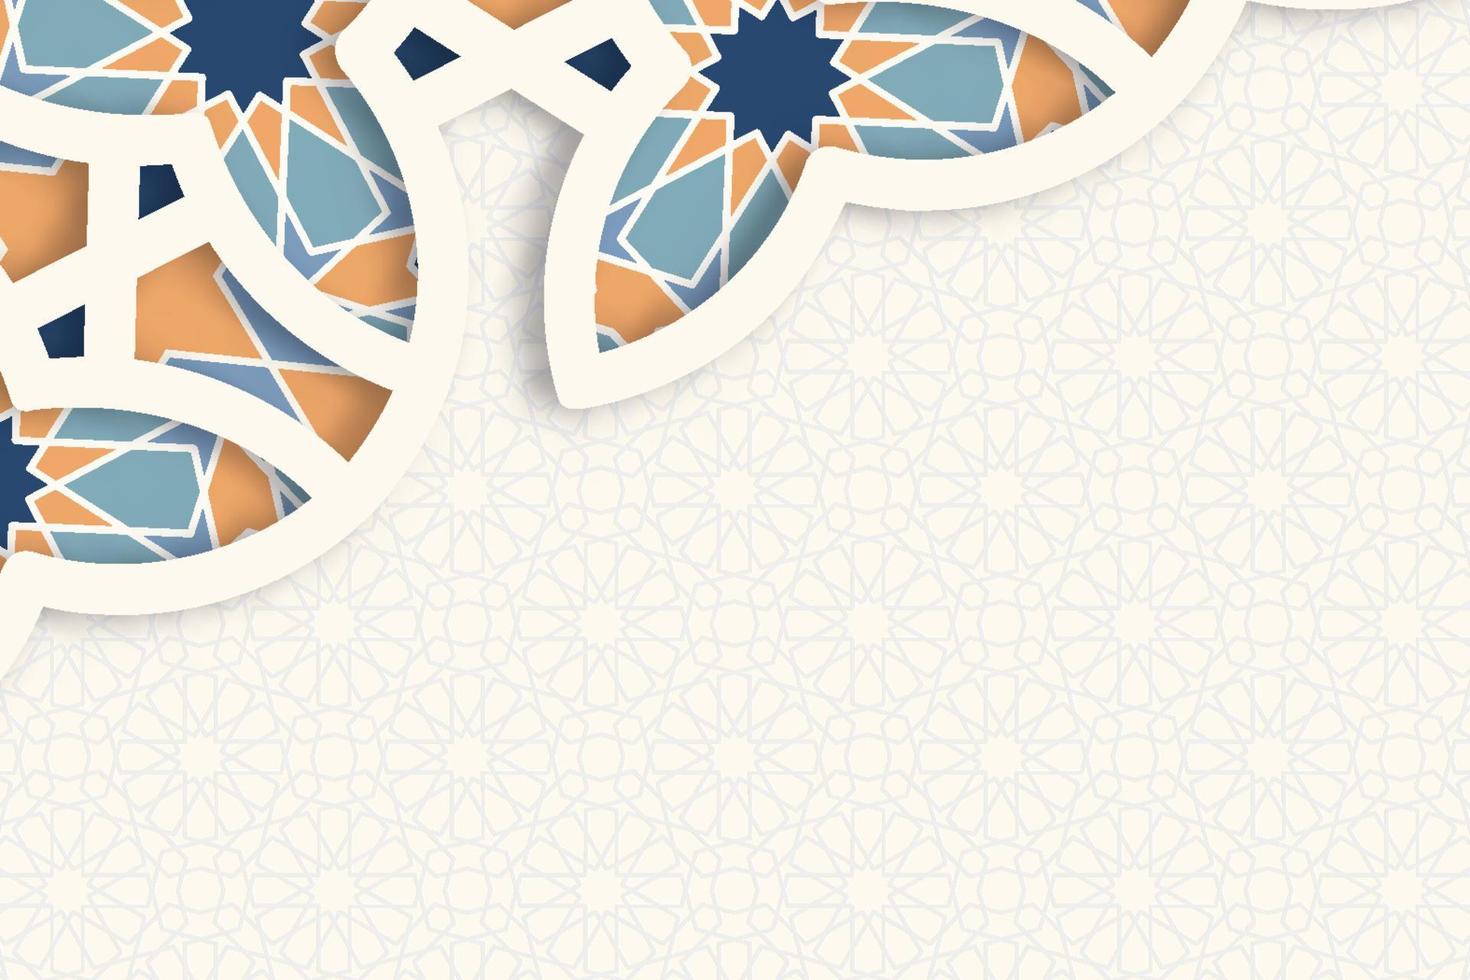 relevo de pedra com padrão ornamental colorido em estilo arquitetônico árabe da mesquita islâmica, cartão para ramadan kareem vetor